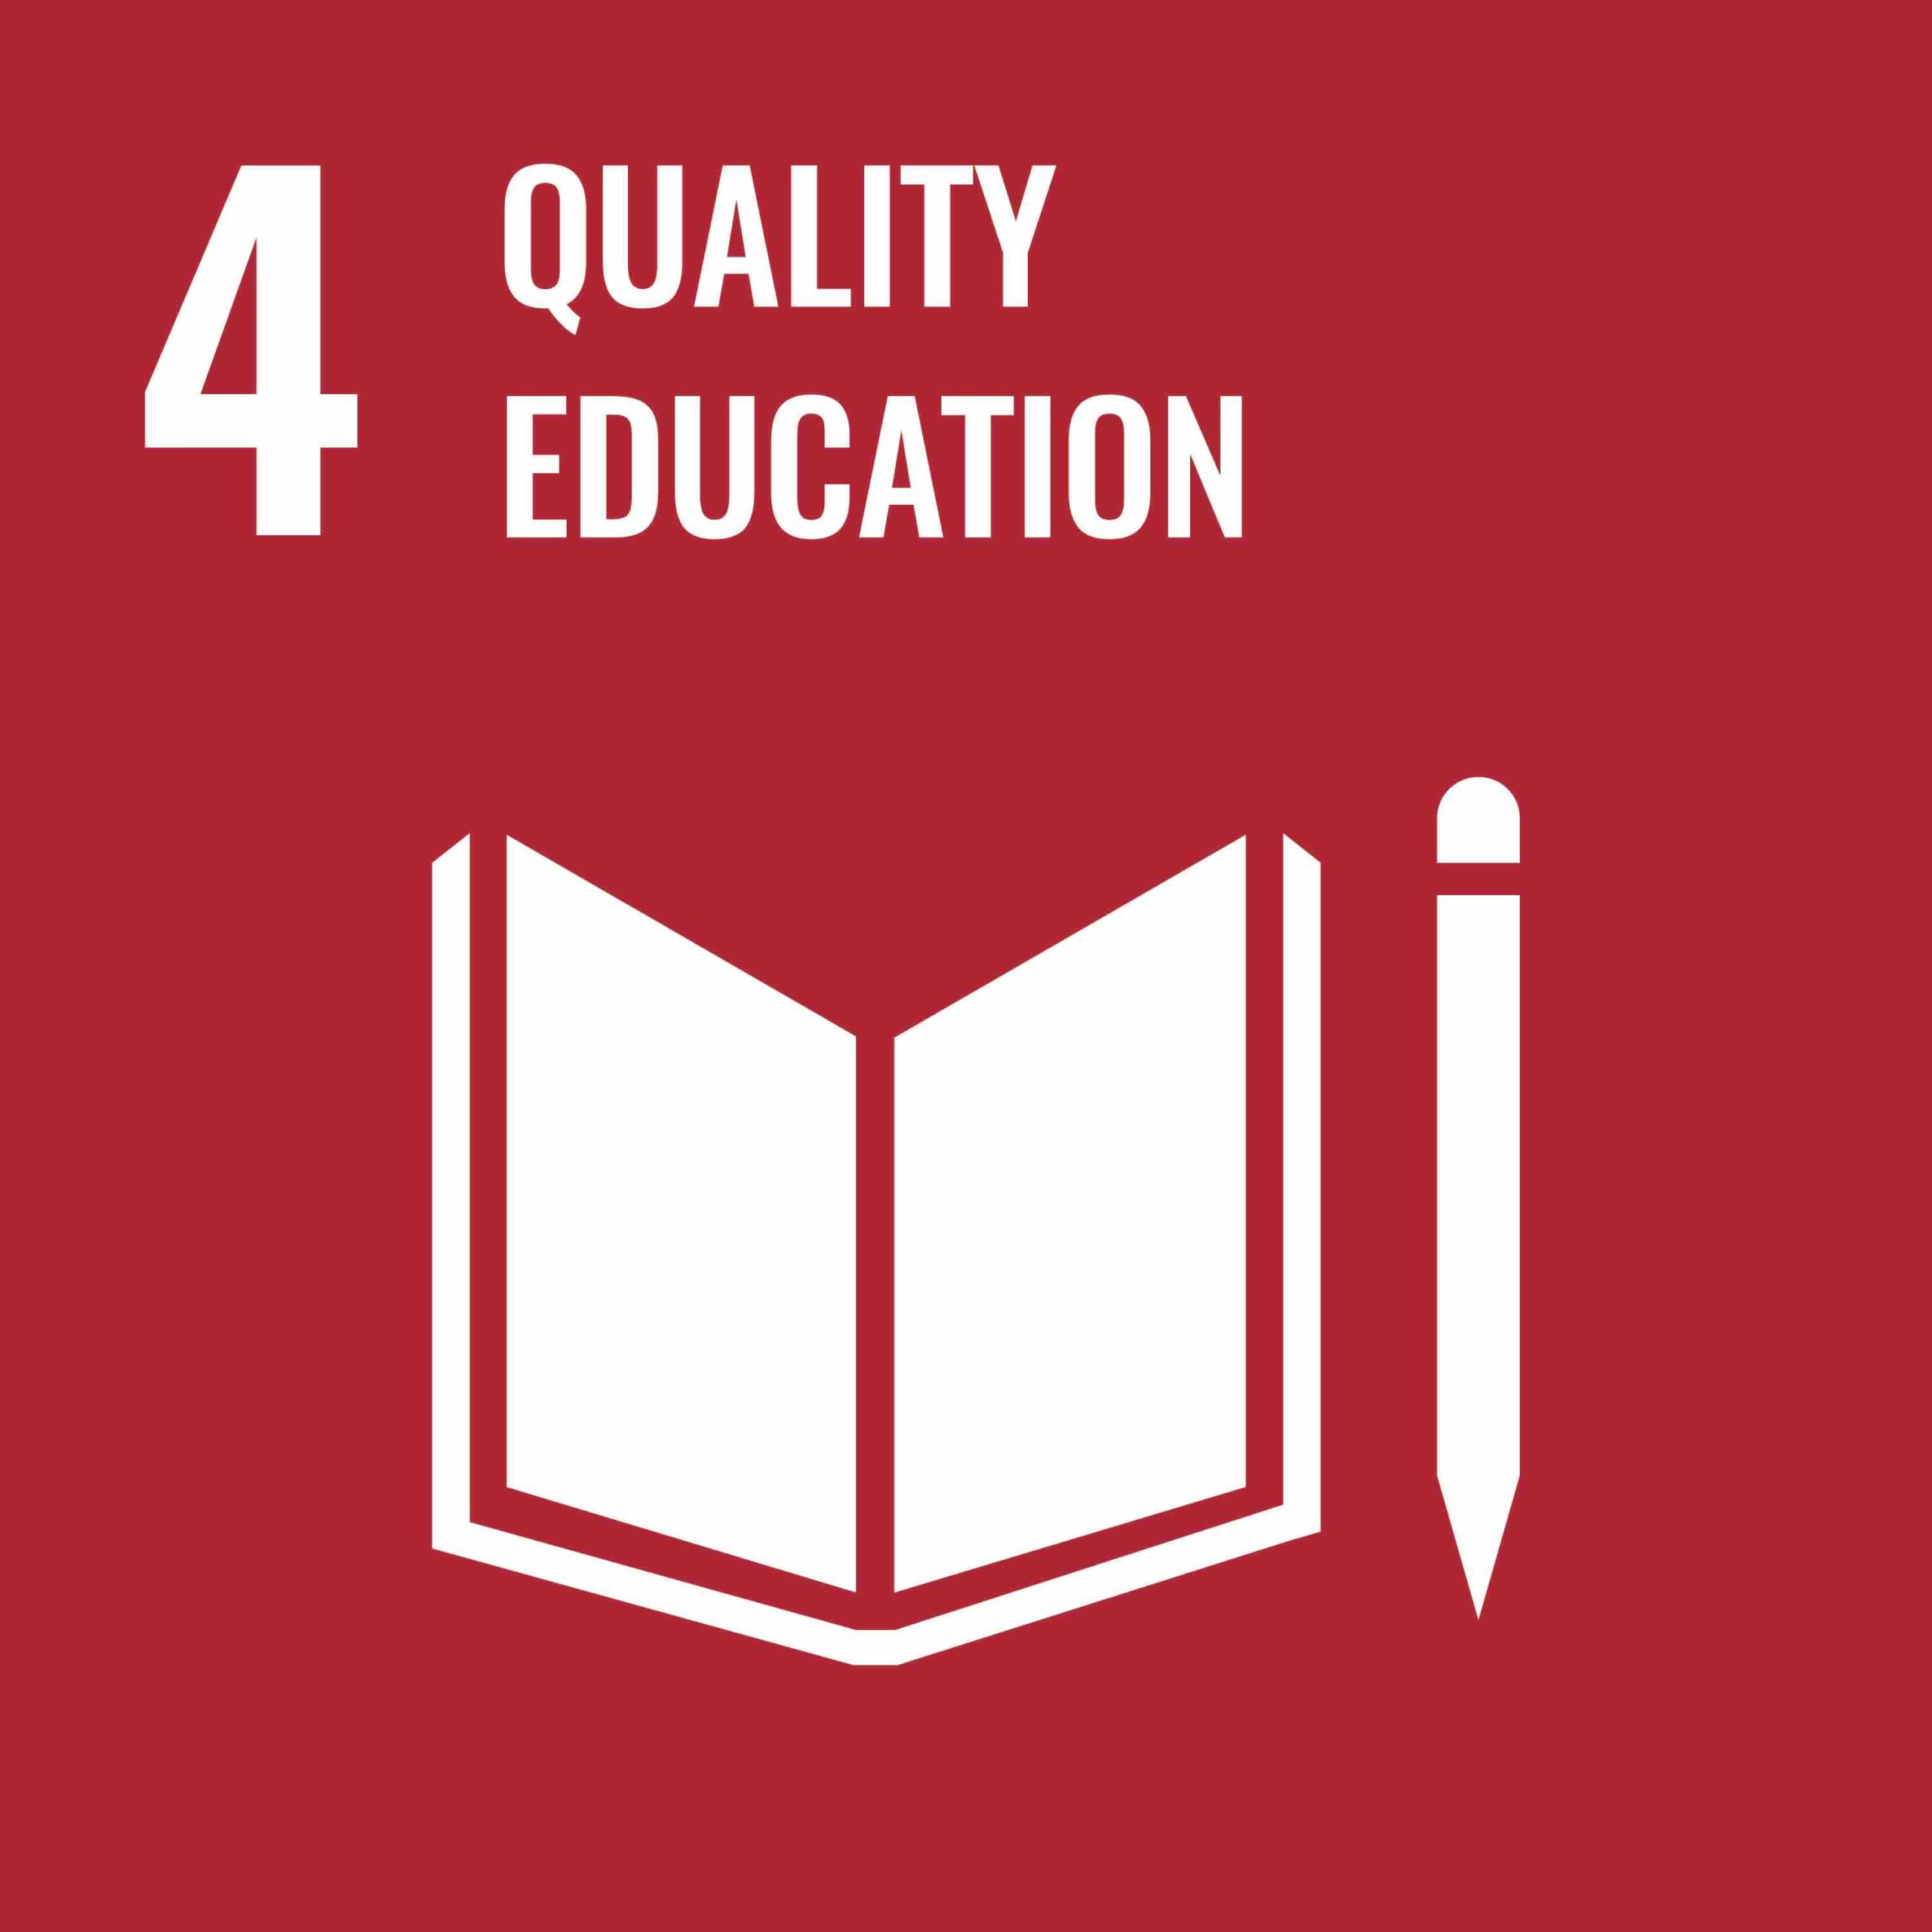 UN Goal 4 Quality Education